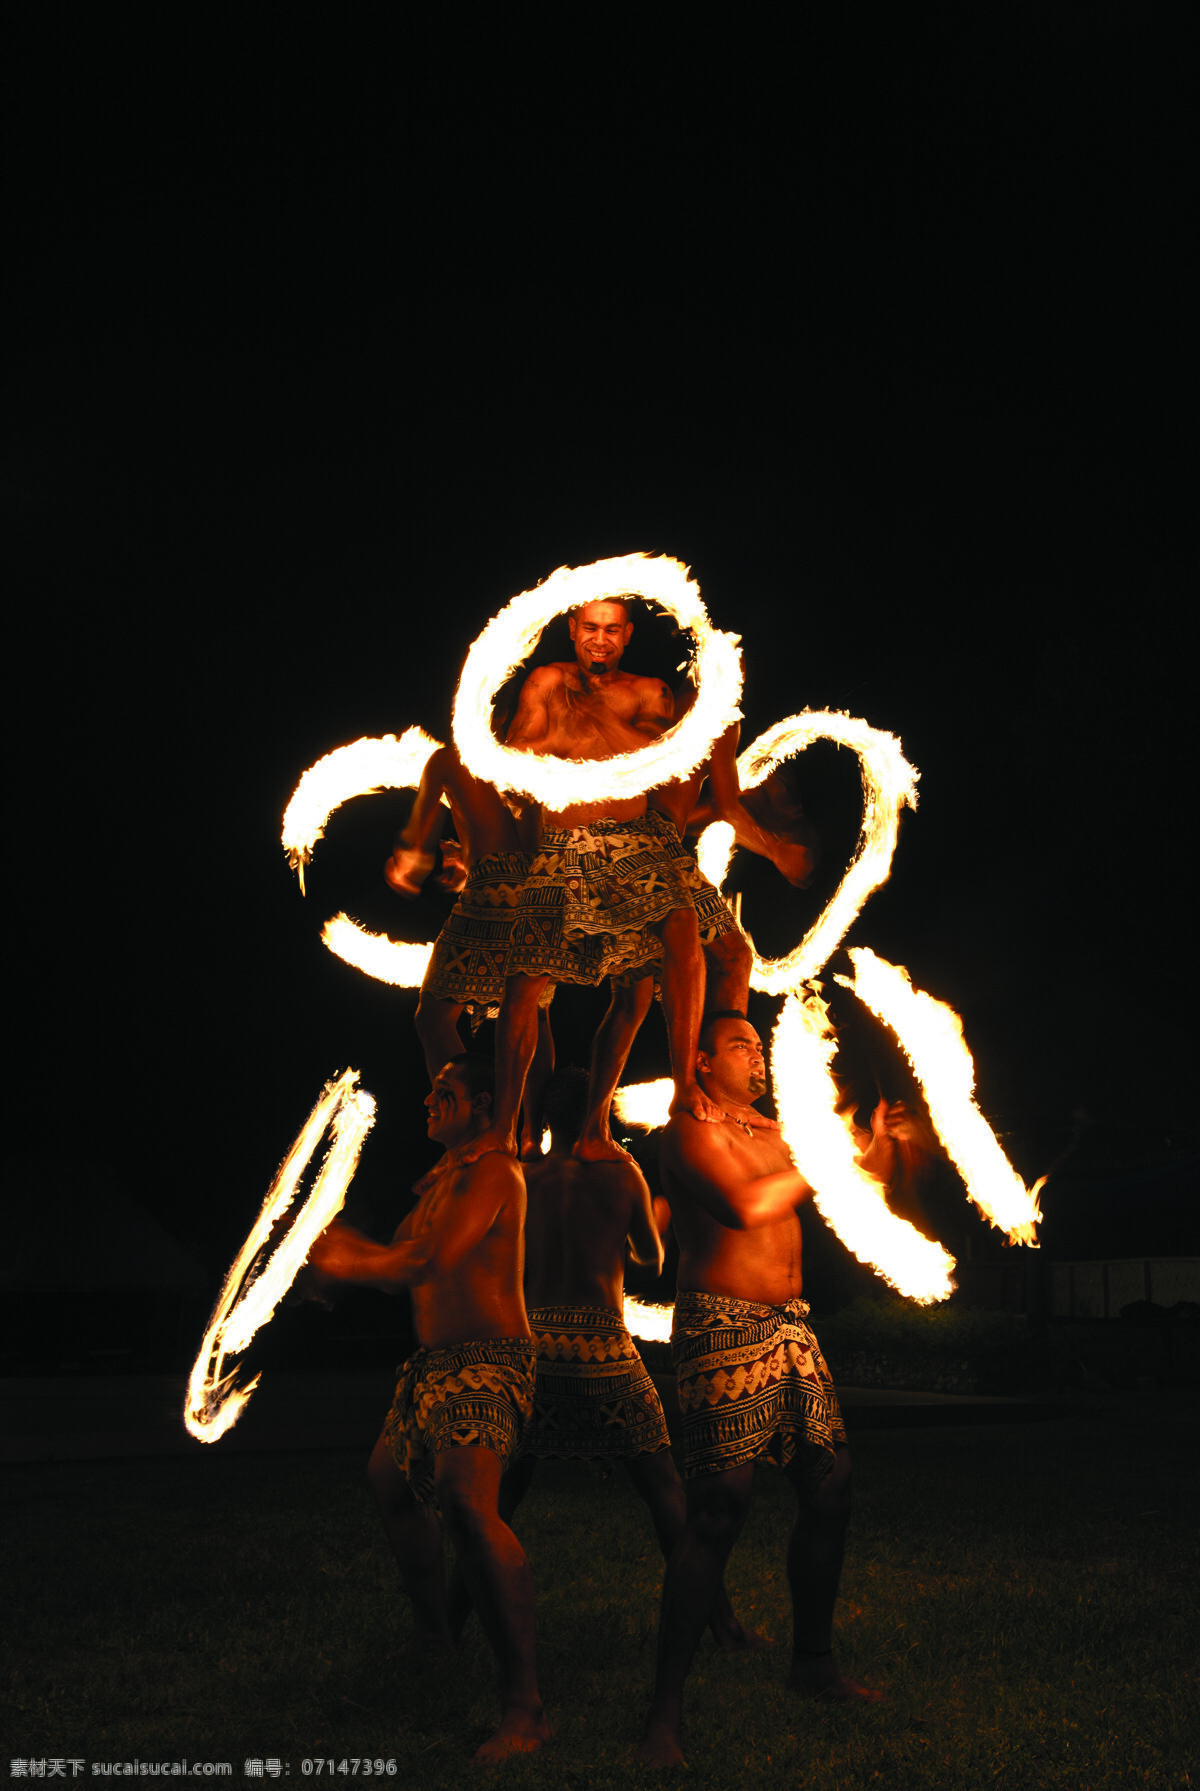 舞蹈 火舞 非洲舞蹈 非洲人 黑人 夜景 旅游拍摄 杂技表演 火 人文景观 旅游摄影